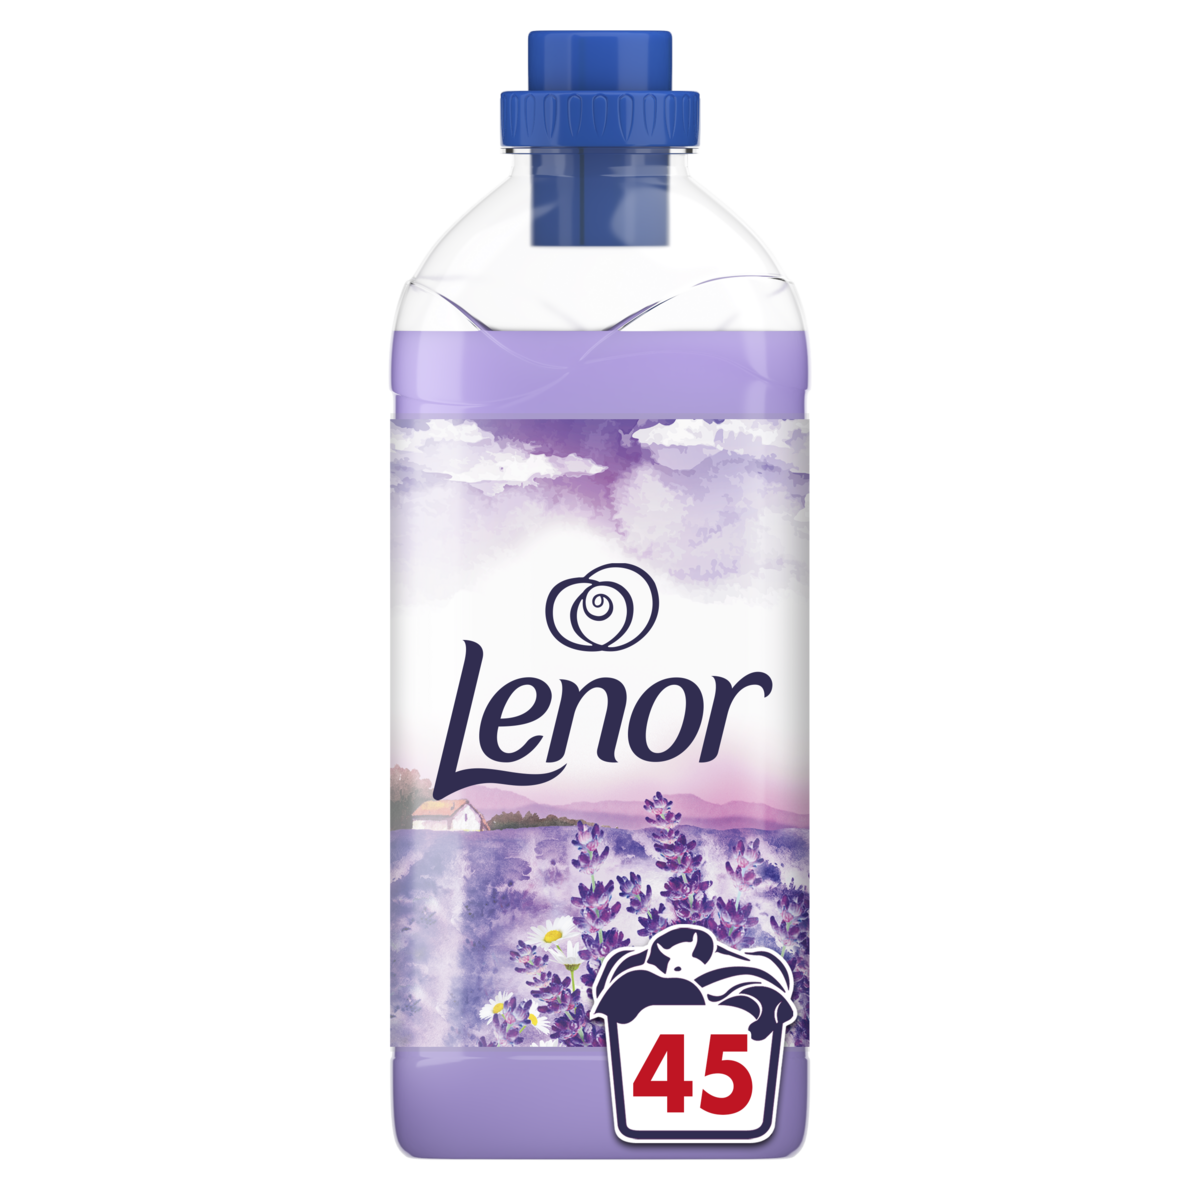 LENOR Adoucissant liquide caresse provencale 45 lavages 1.035l